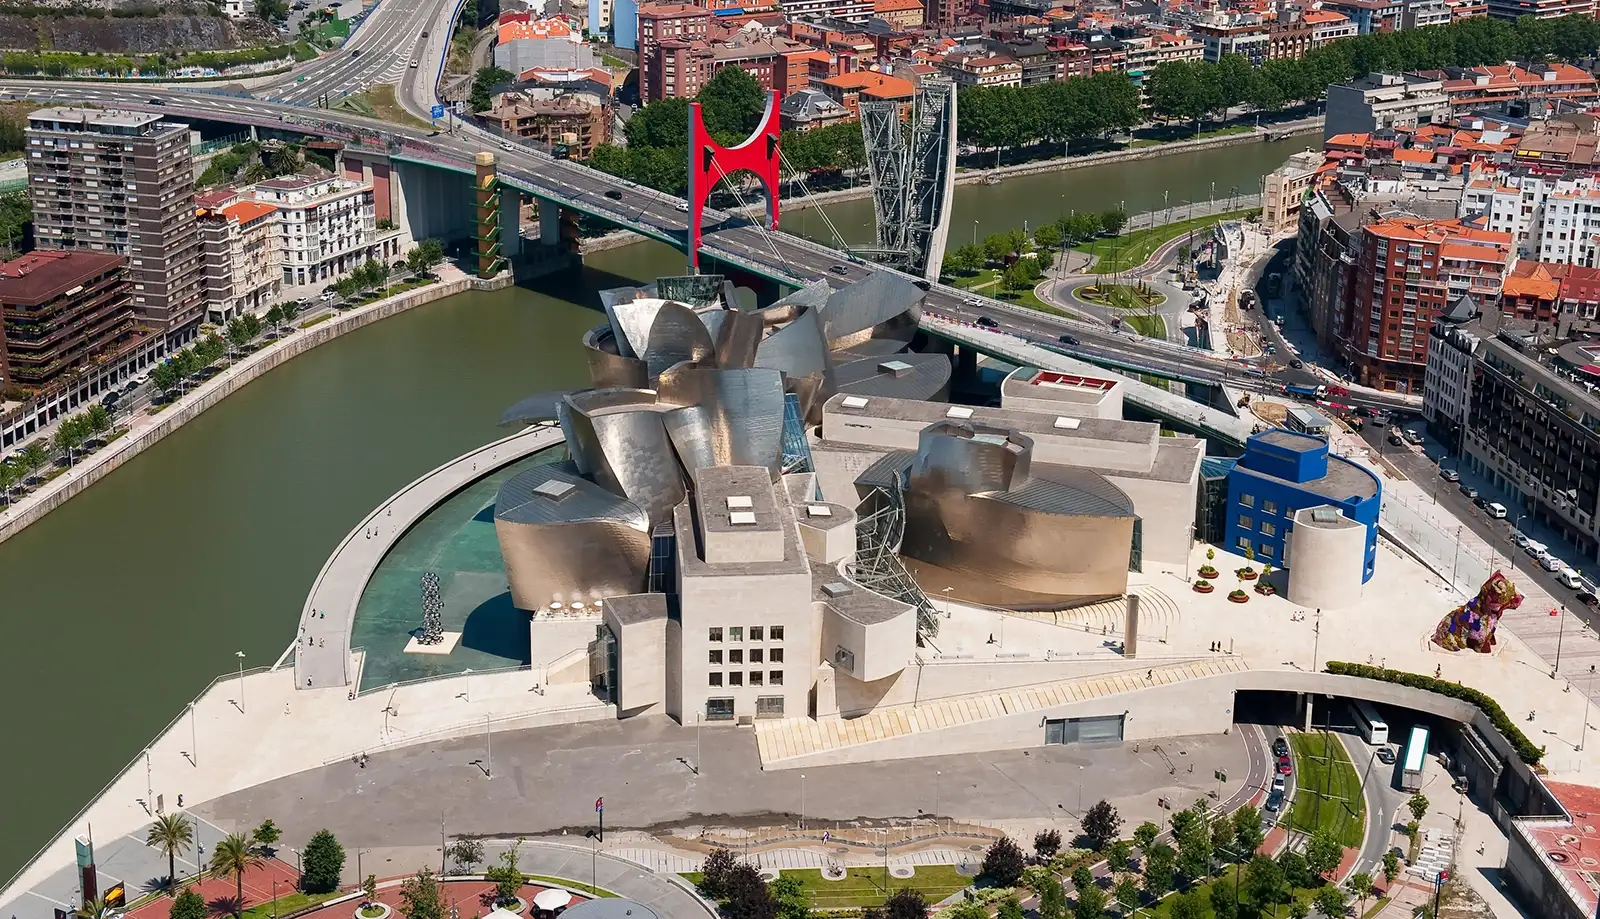 Kiến trúc độc đáo của bảo tàng Guggenheim